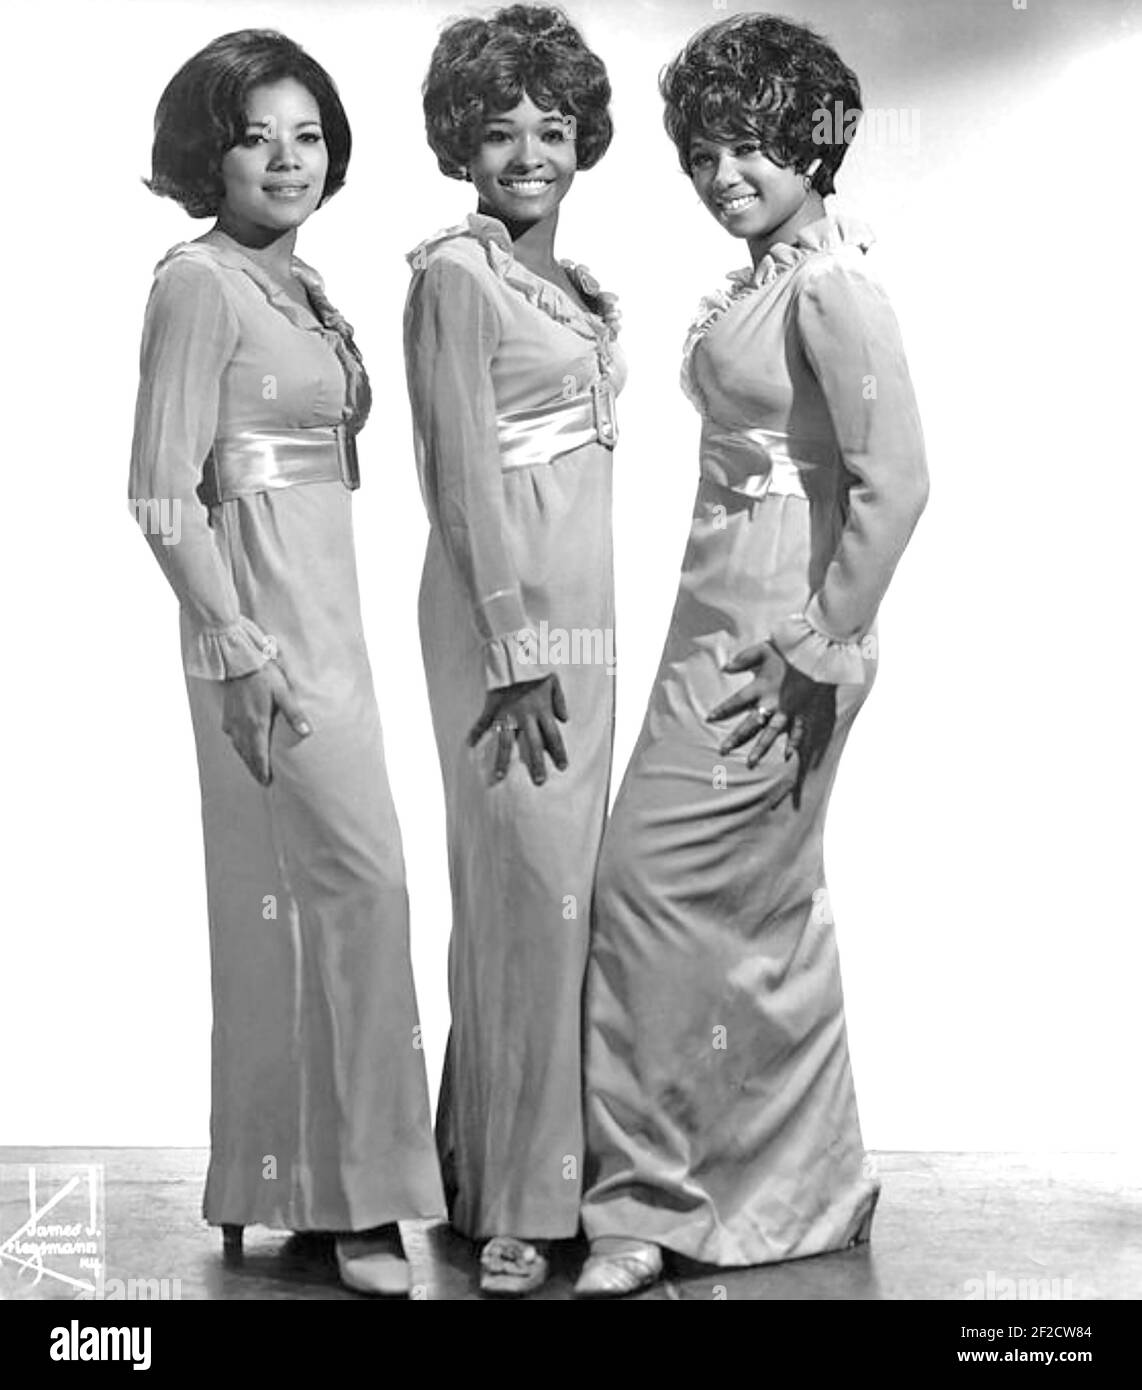 LES SUCETTES photo promotionnelle du trio vocal de fille américaine à propos de 1966 Banque D'Images